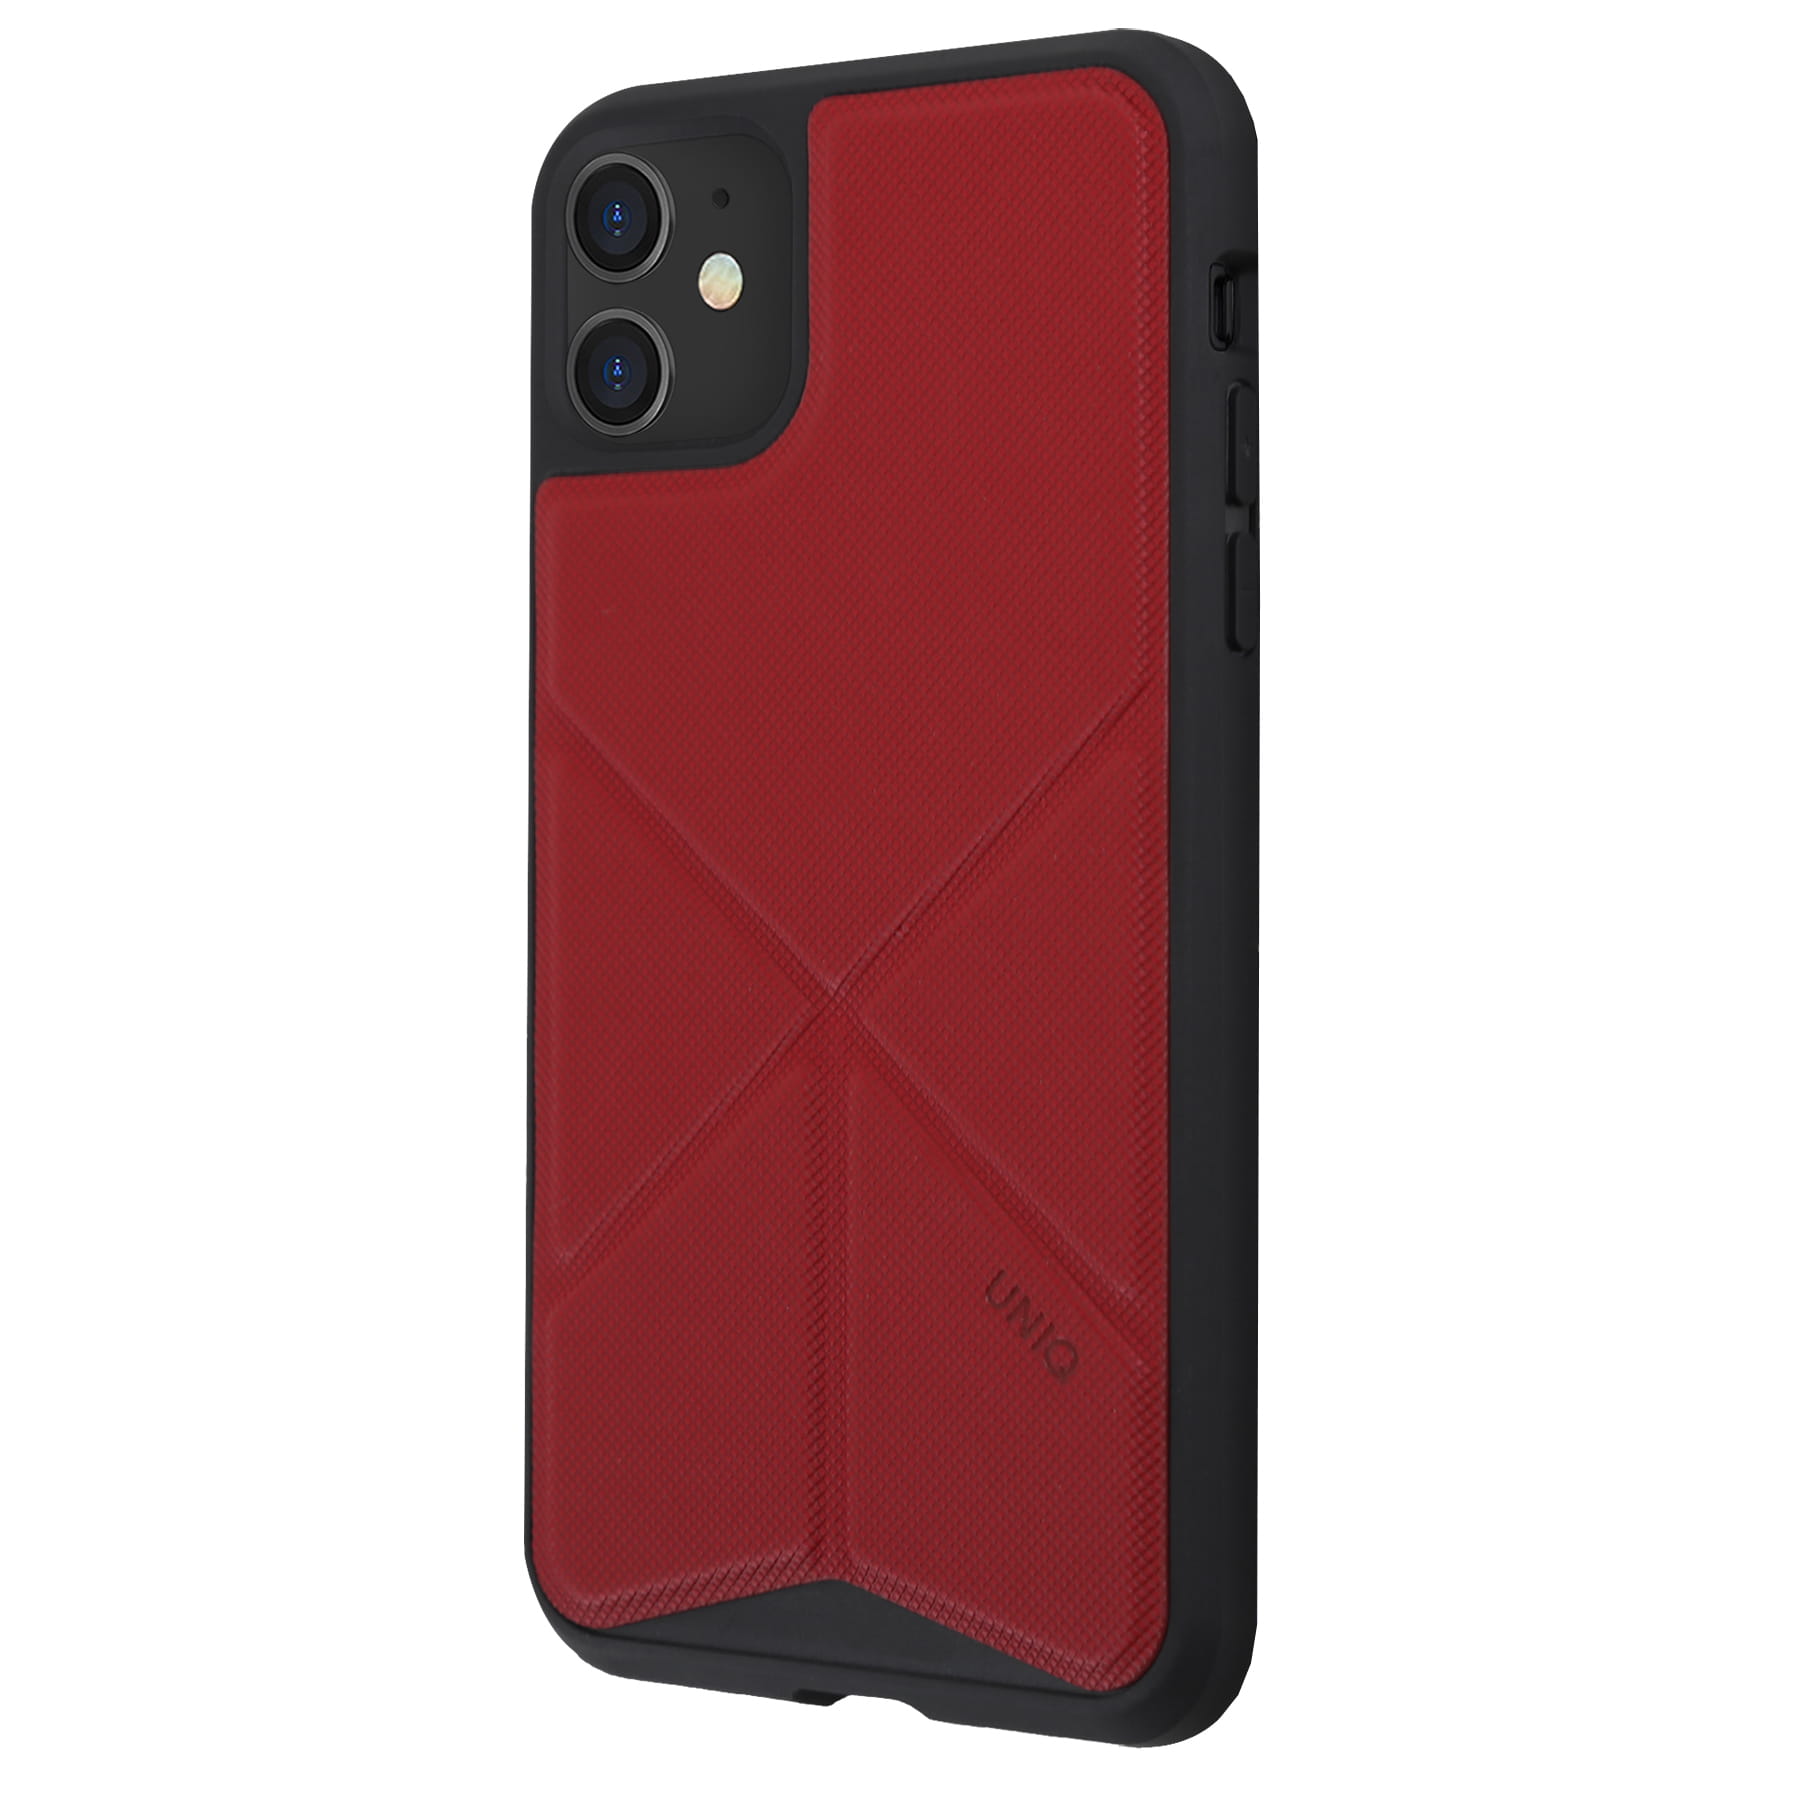 Schutzhülle Uniq aus der Serie Transforma für iPhone 11 rot.